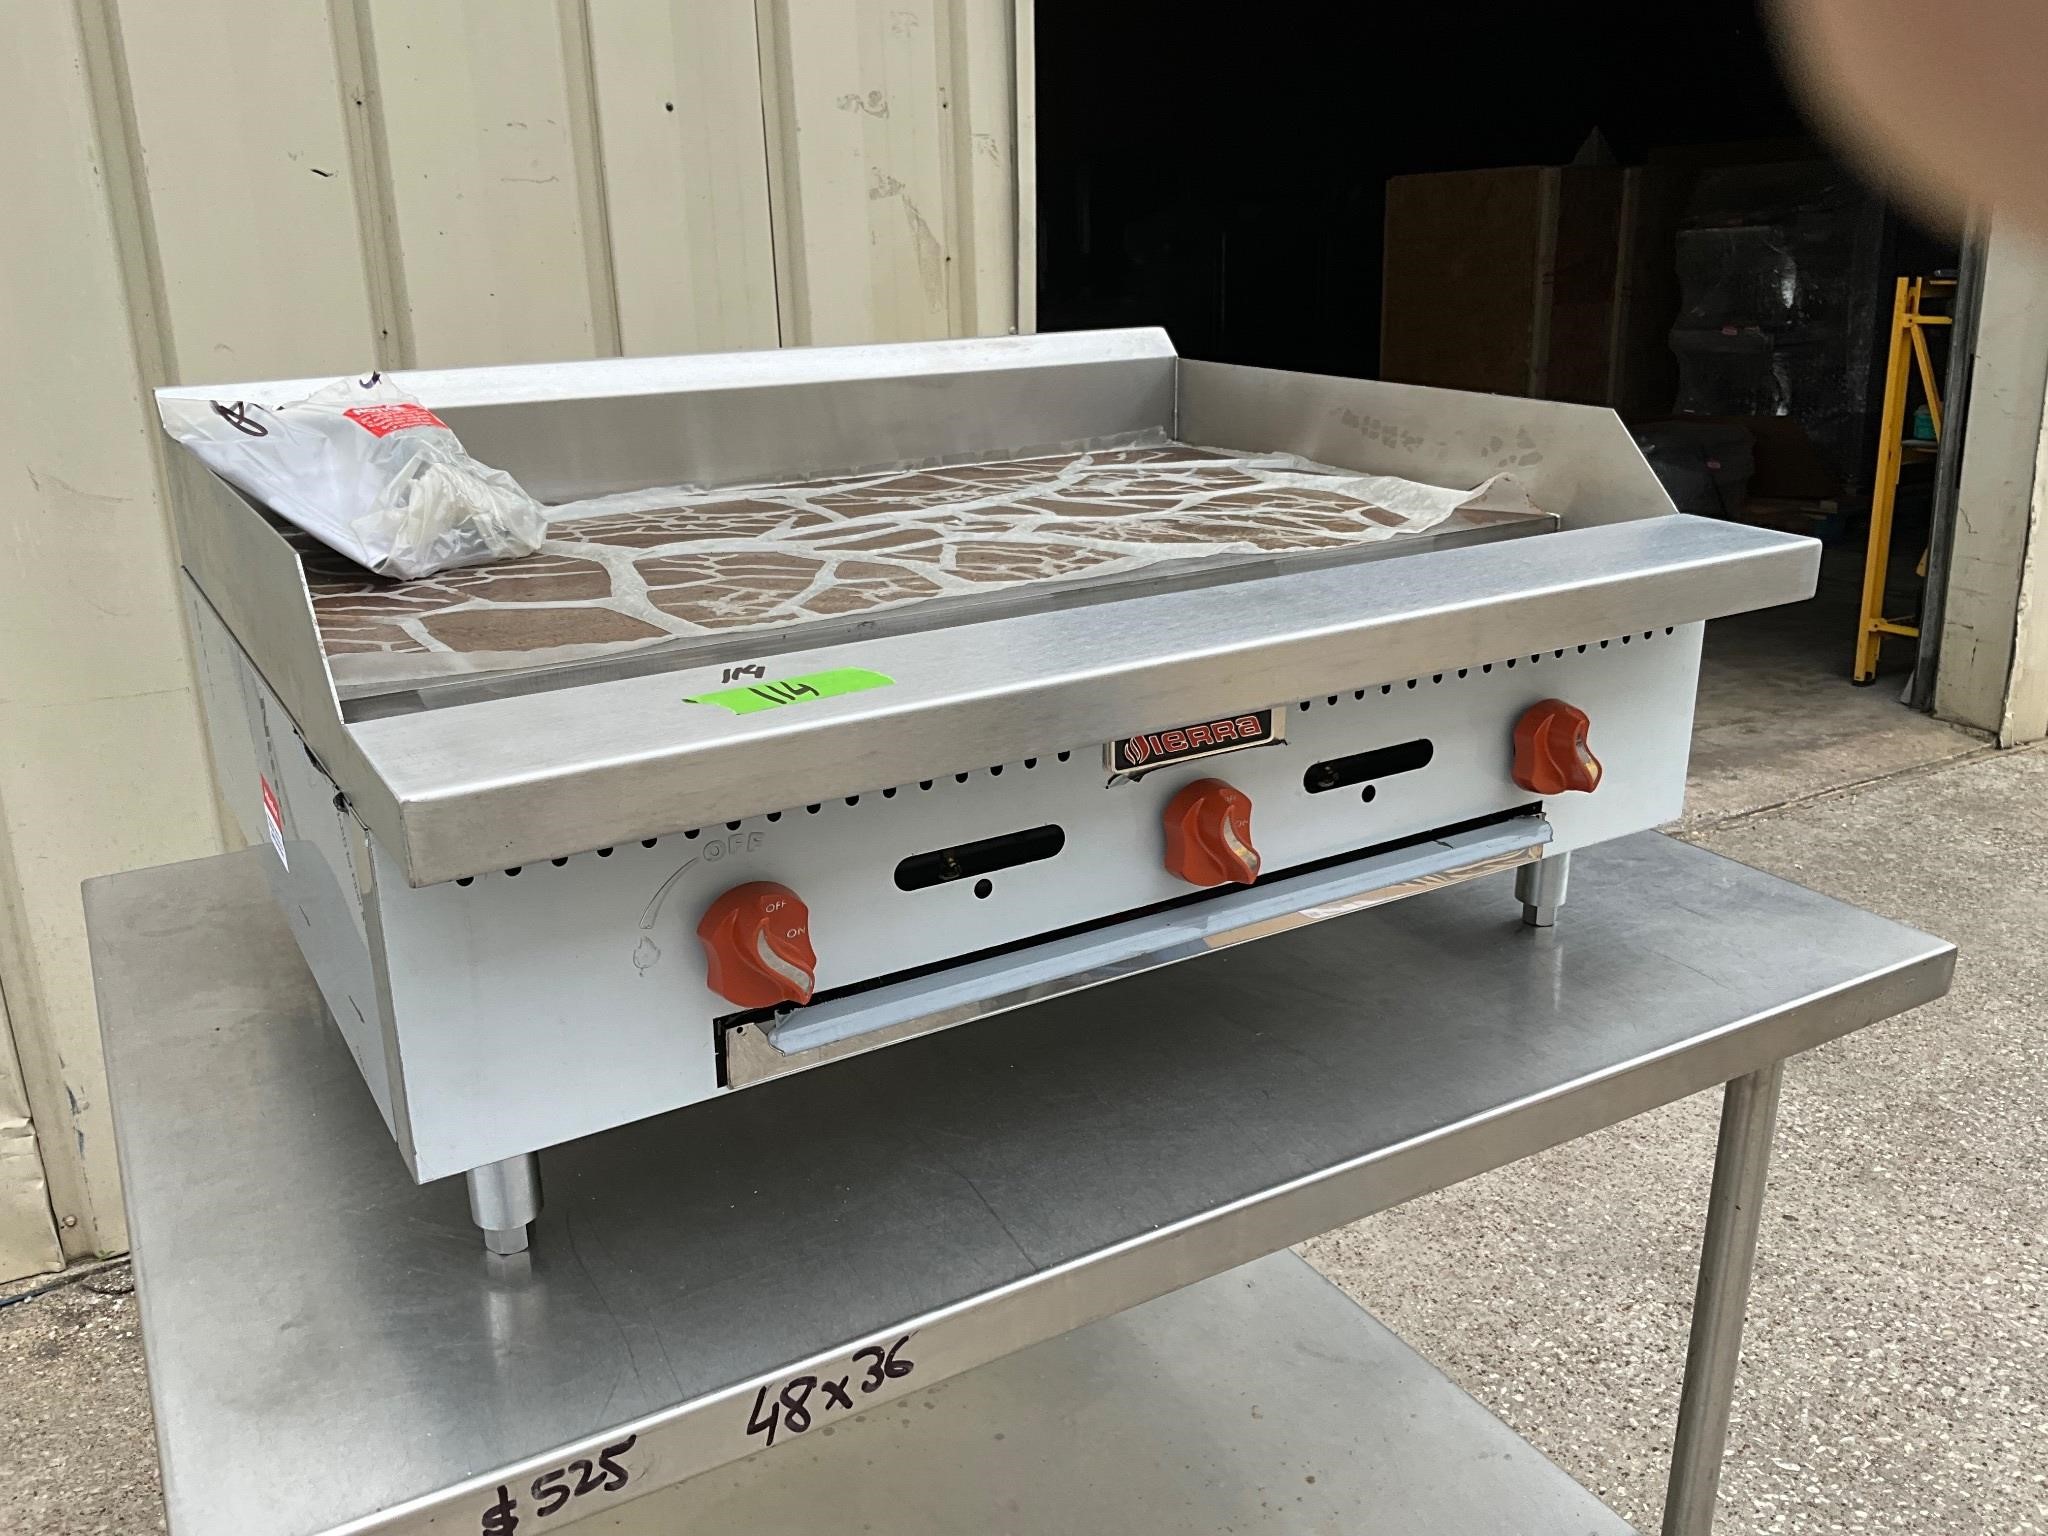 Sierra 36” gas flat griddle grill